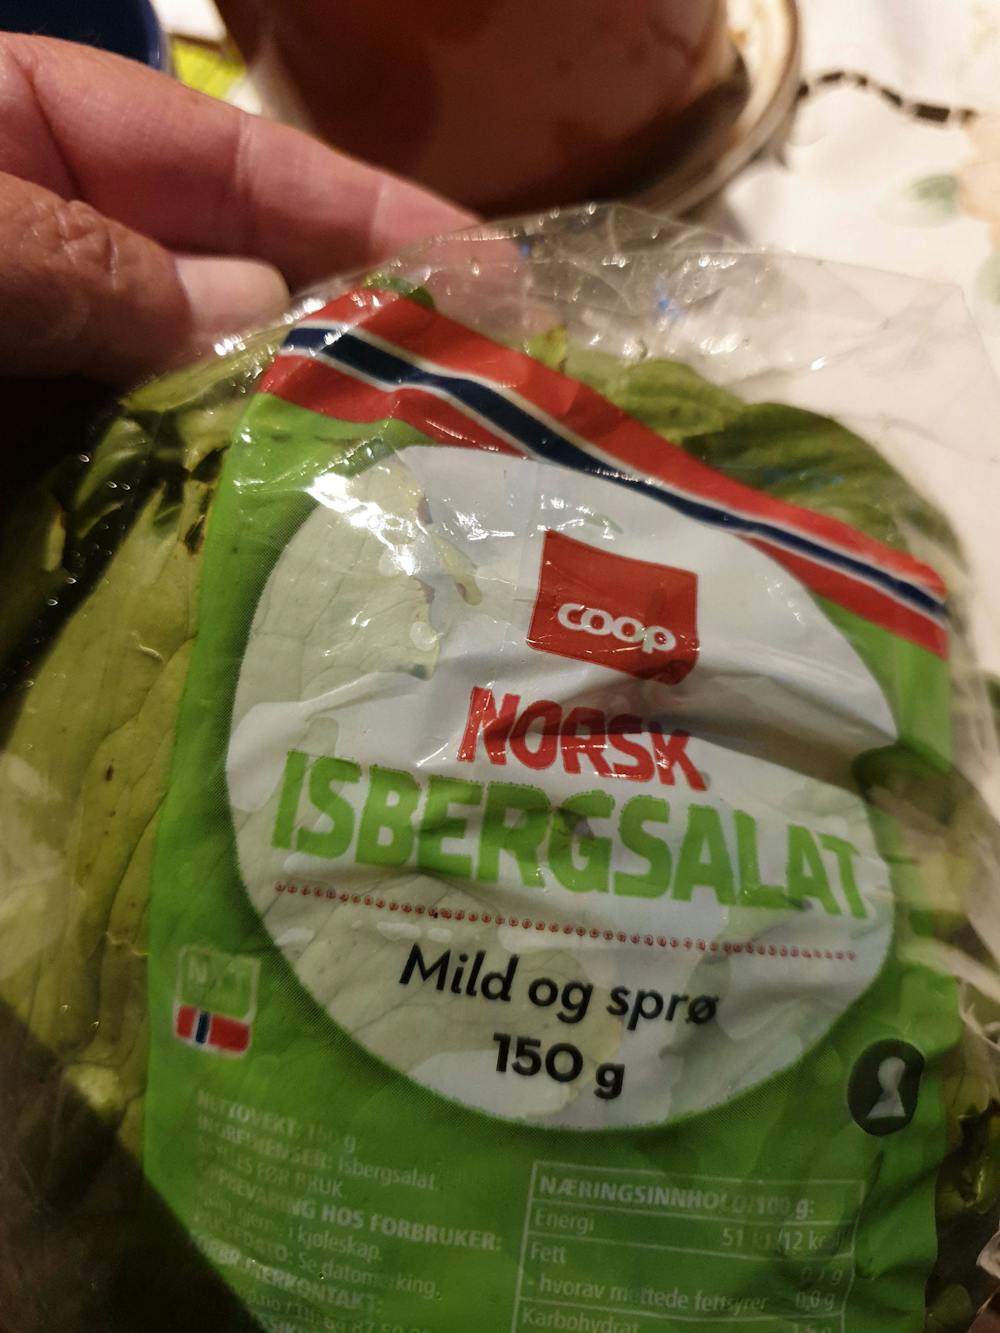 Norsk isbergsalat, Coop